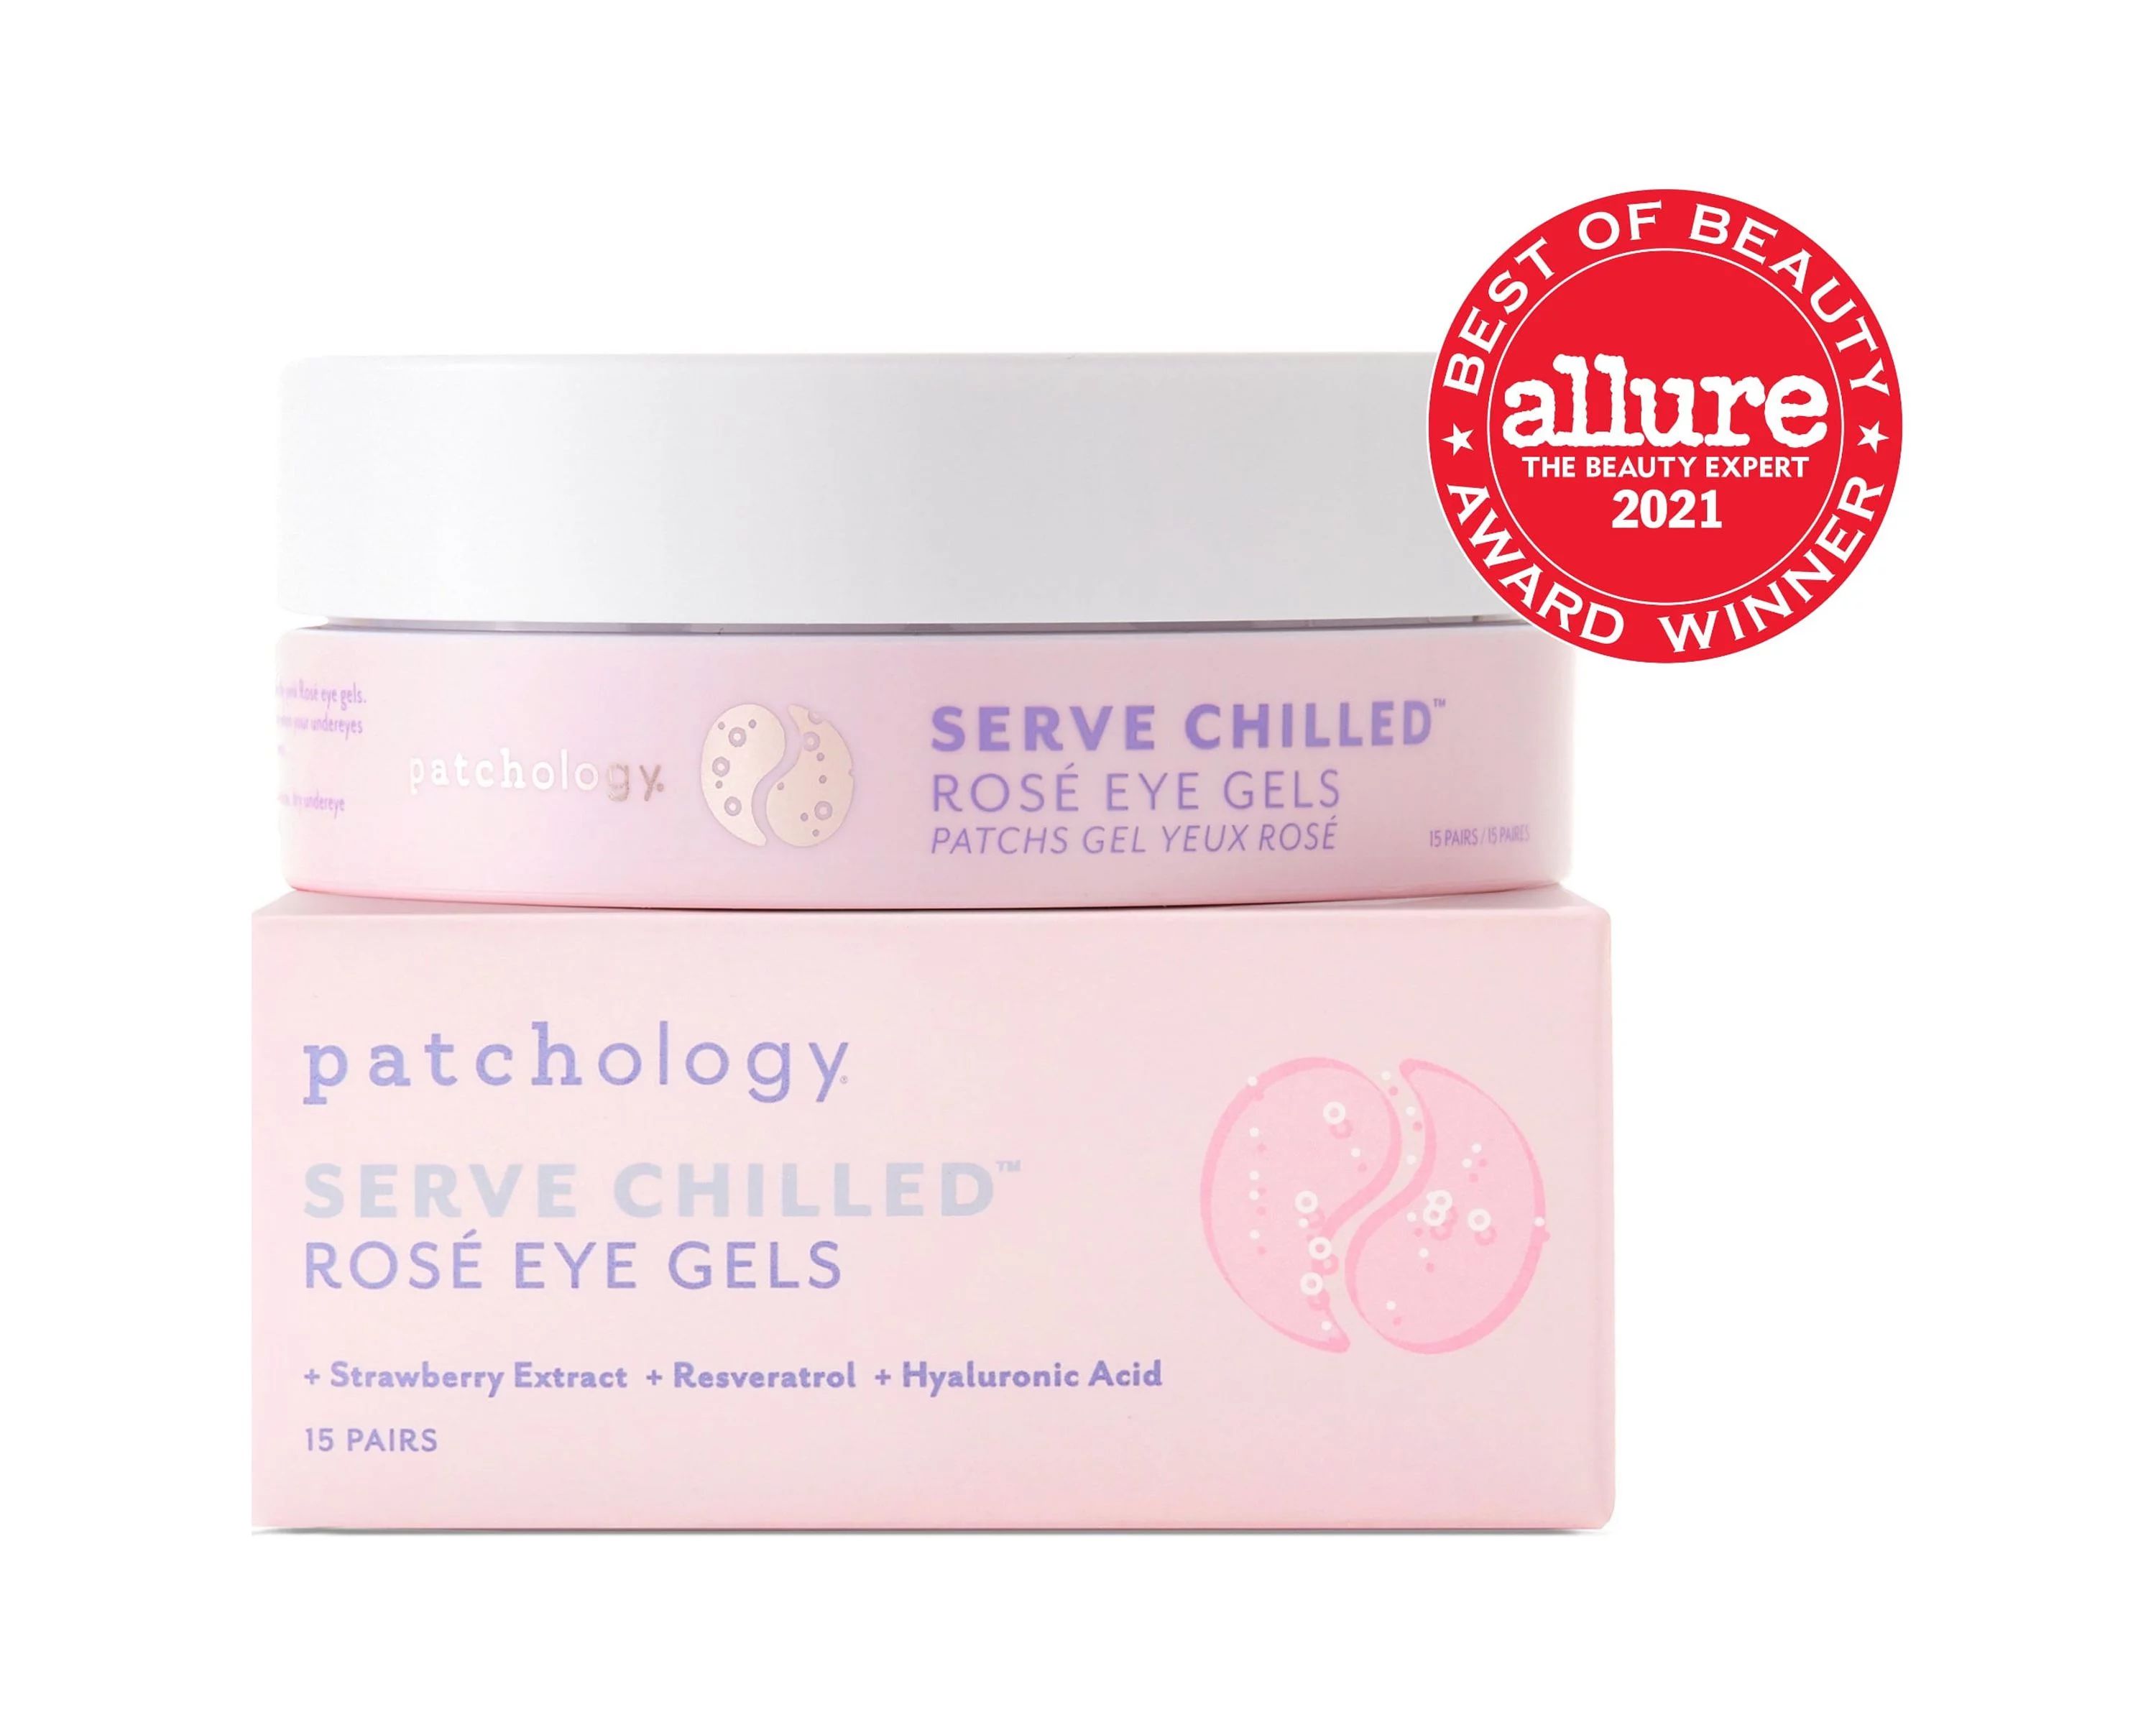 Patchology Serve Chilled Rose Eye Masks Gel, 15 Pack | Walmart (US)